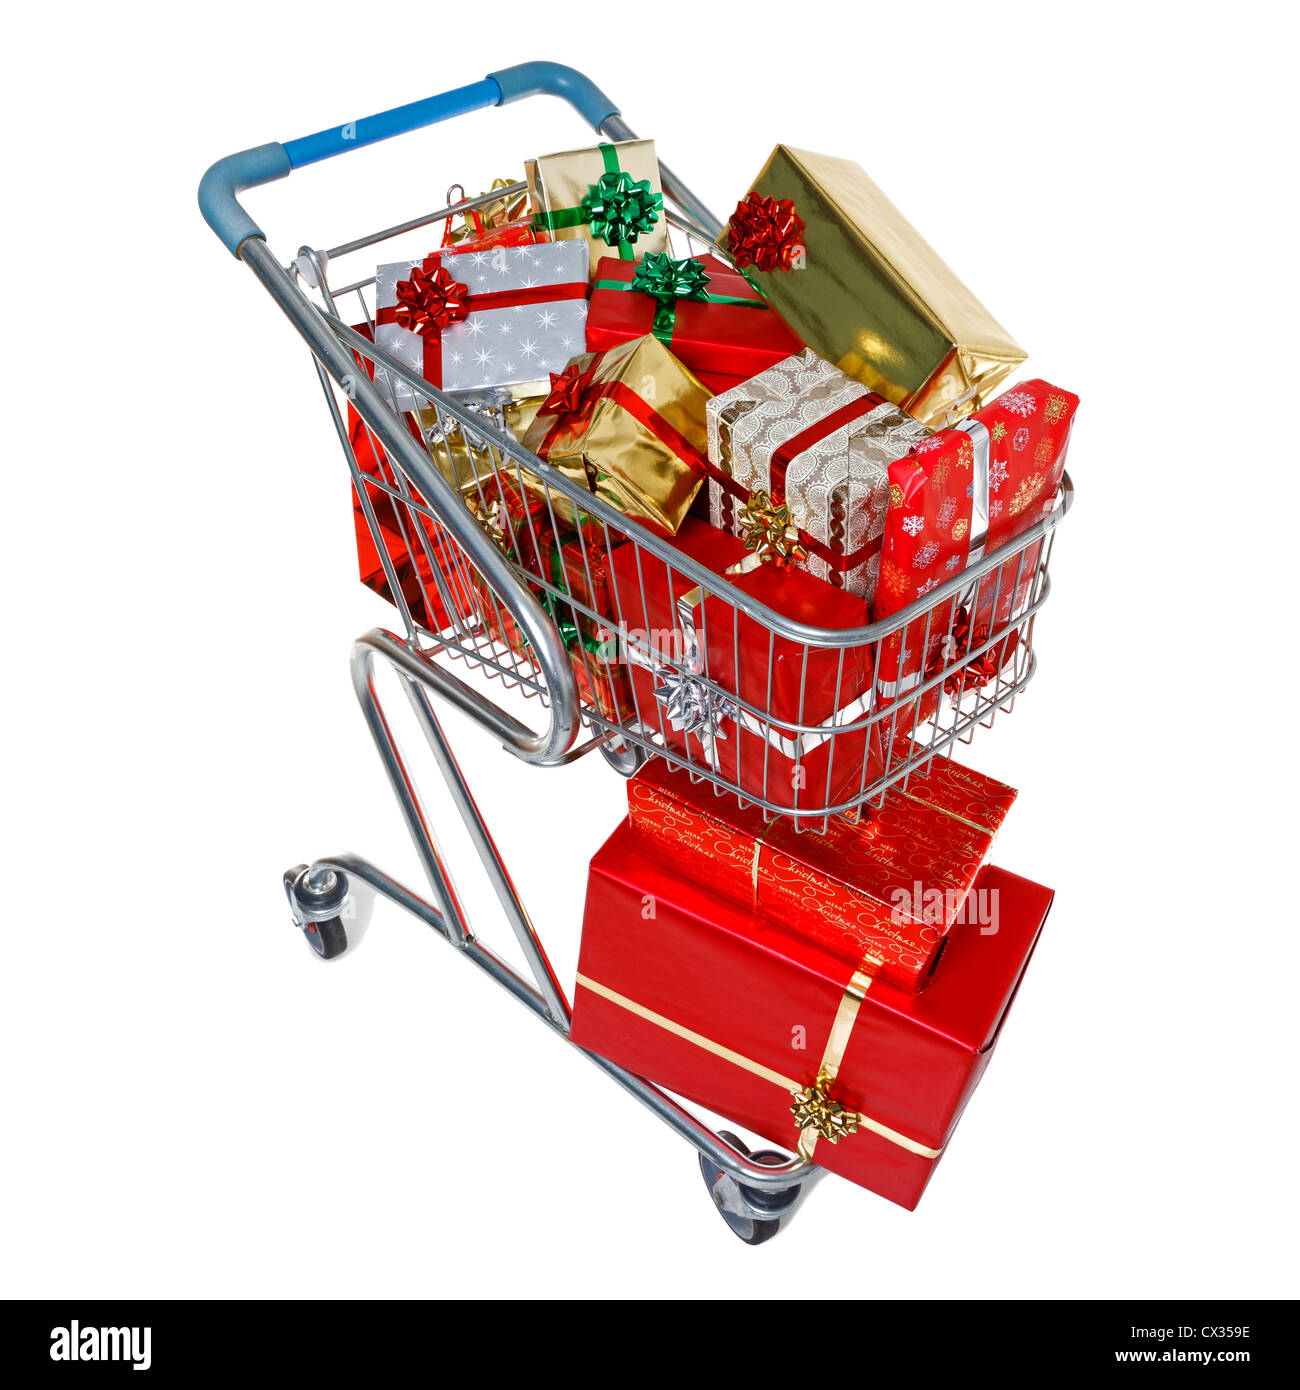 Ein Einkaufswagen voller Geschenk verpackt Weihnachtsgeschenke, isoliert auf einem weißen Hintergrund. Stockfoto